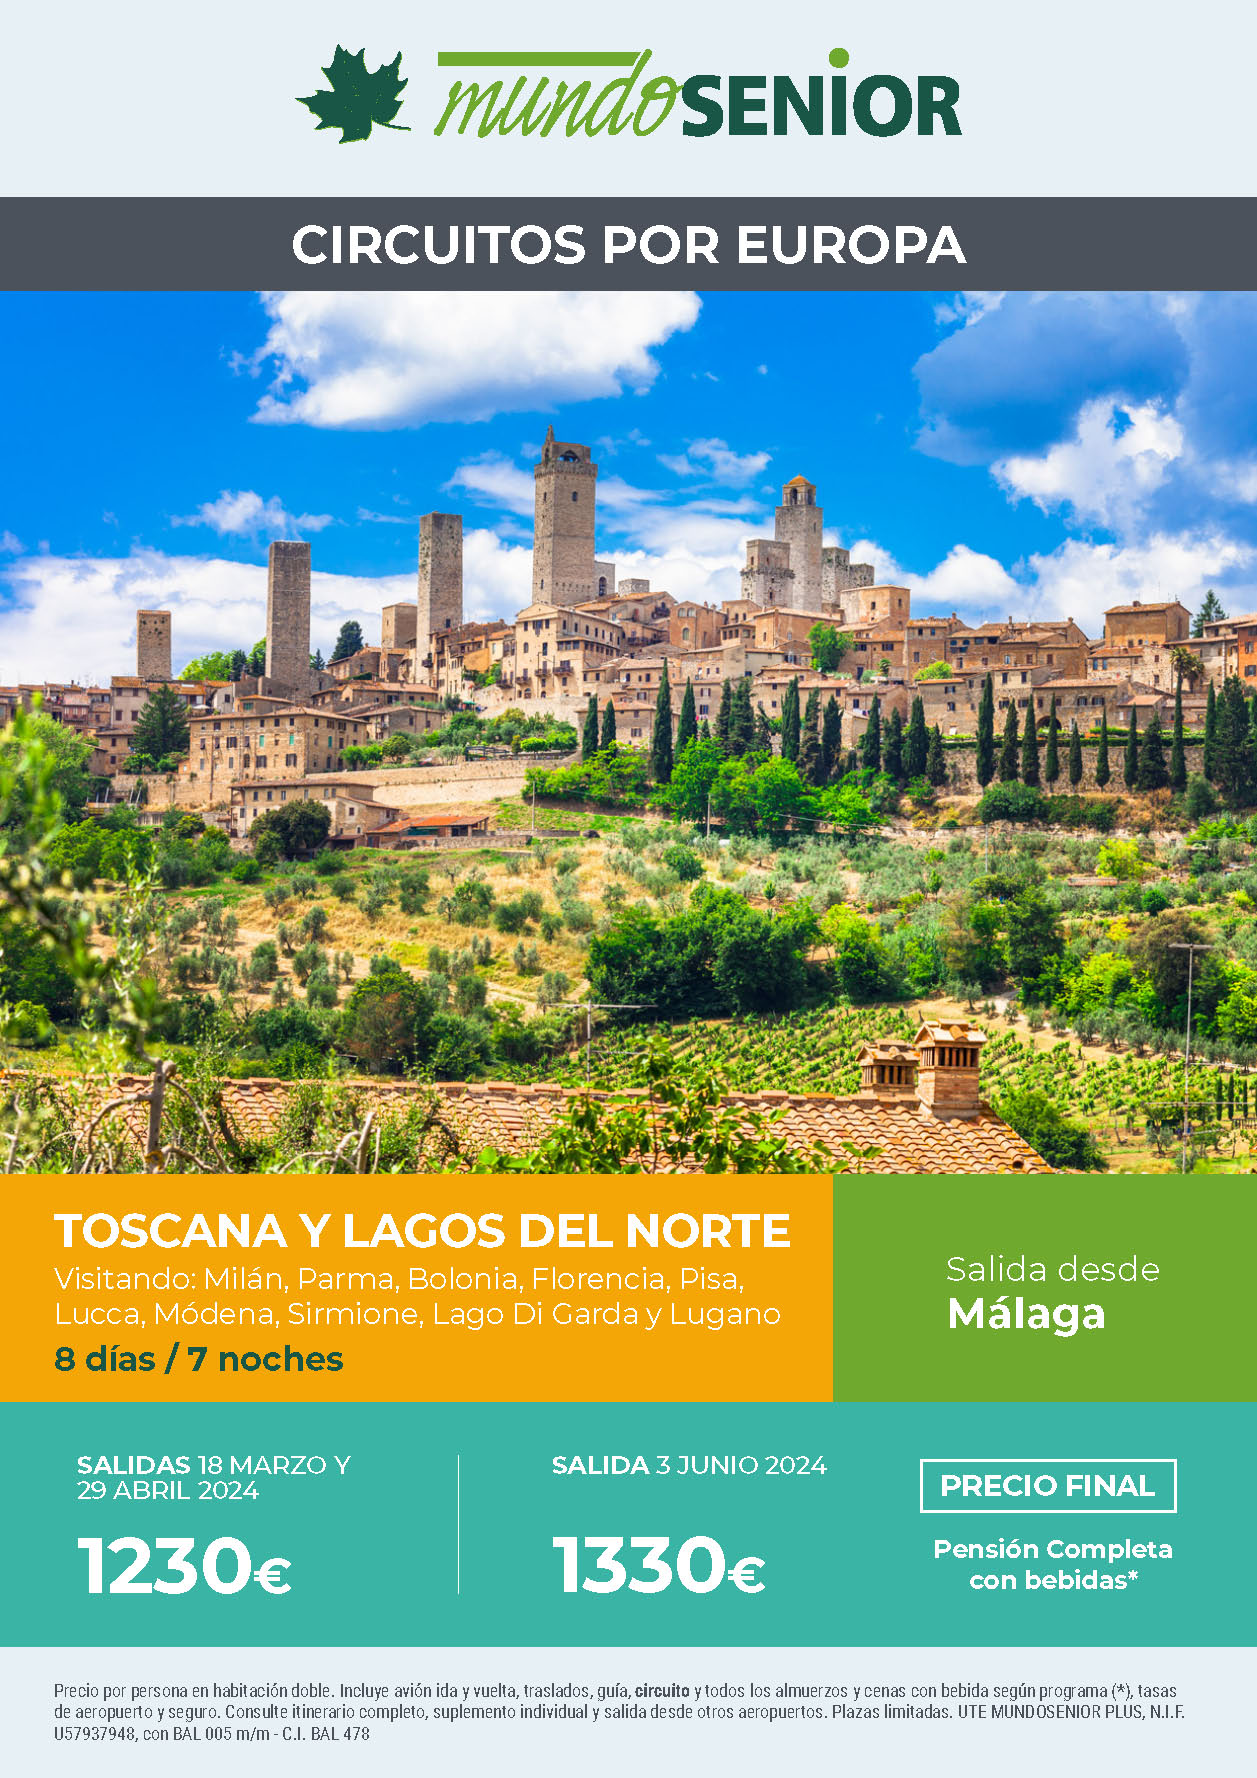 Oferta Mundo Senior circuito Toscana y Lagos del Norte Pension Completa 8 dias salidas marzo abril junio 2024 en vuelo directo desde Malaga